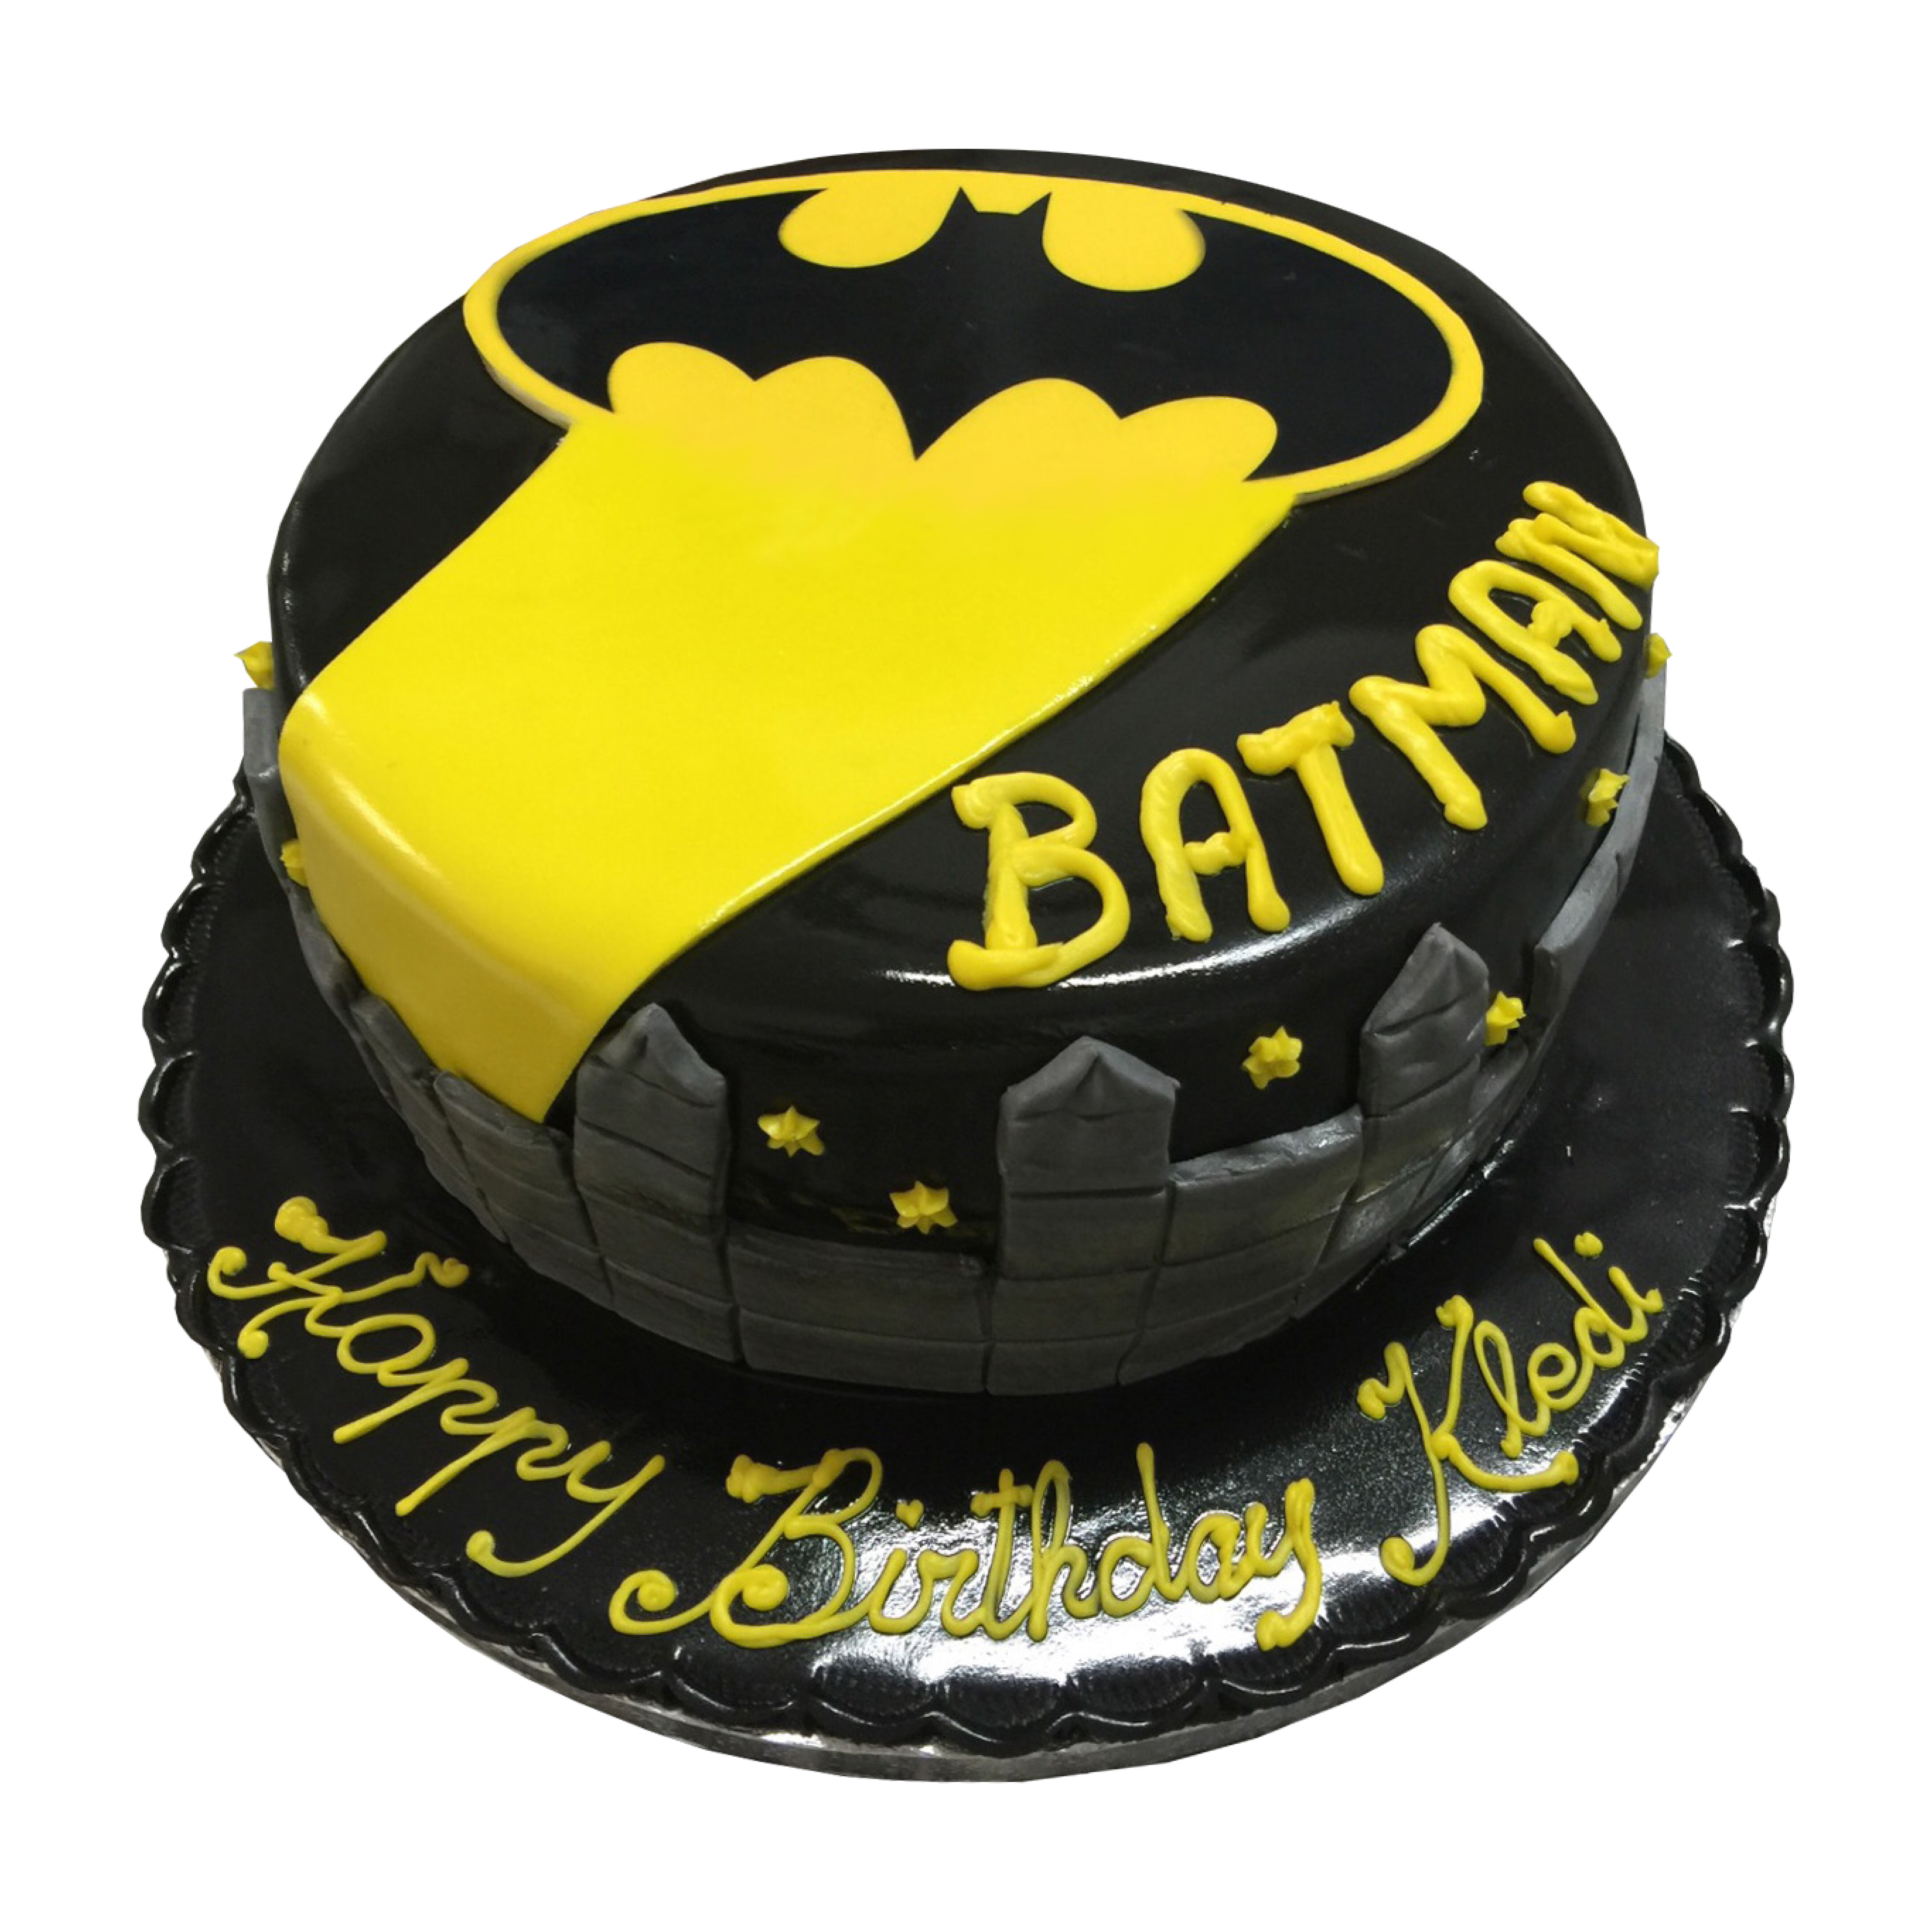 Batman Cake - 1116 – Cakes and Memories Bakeshop